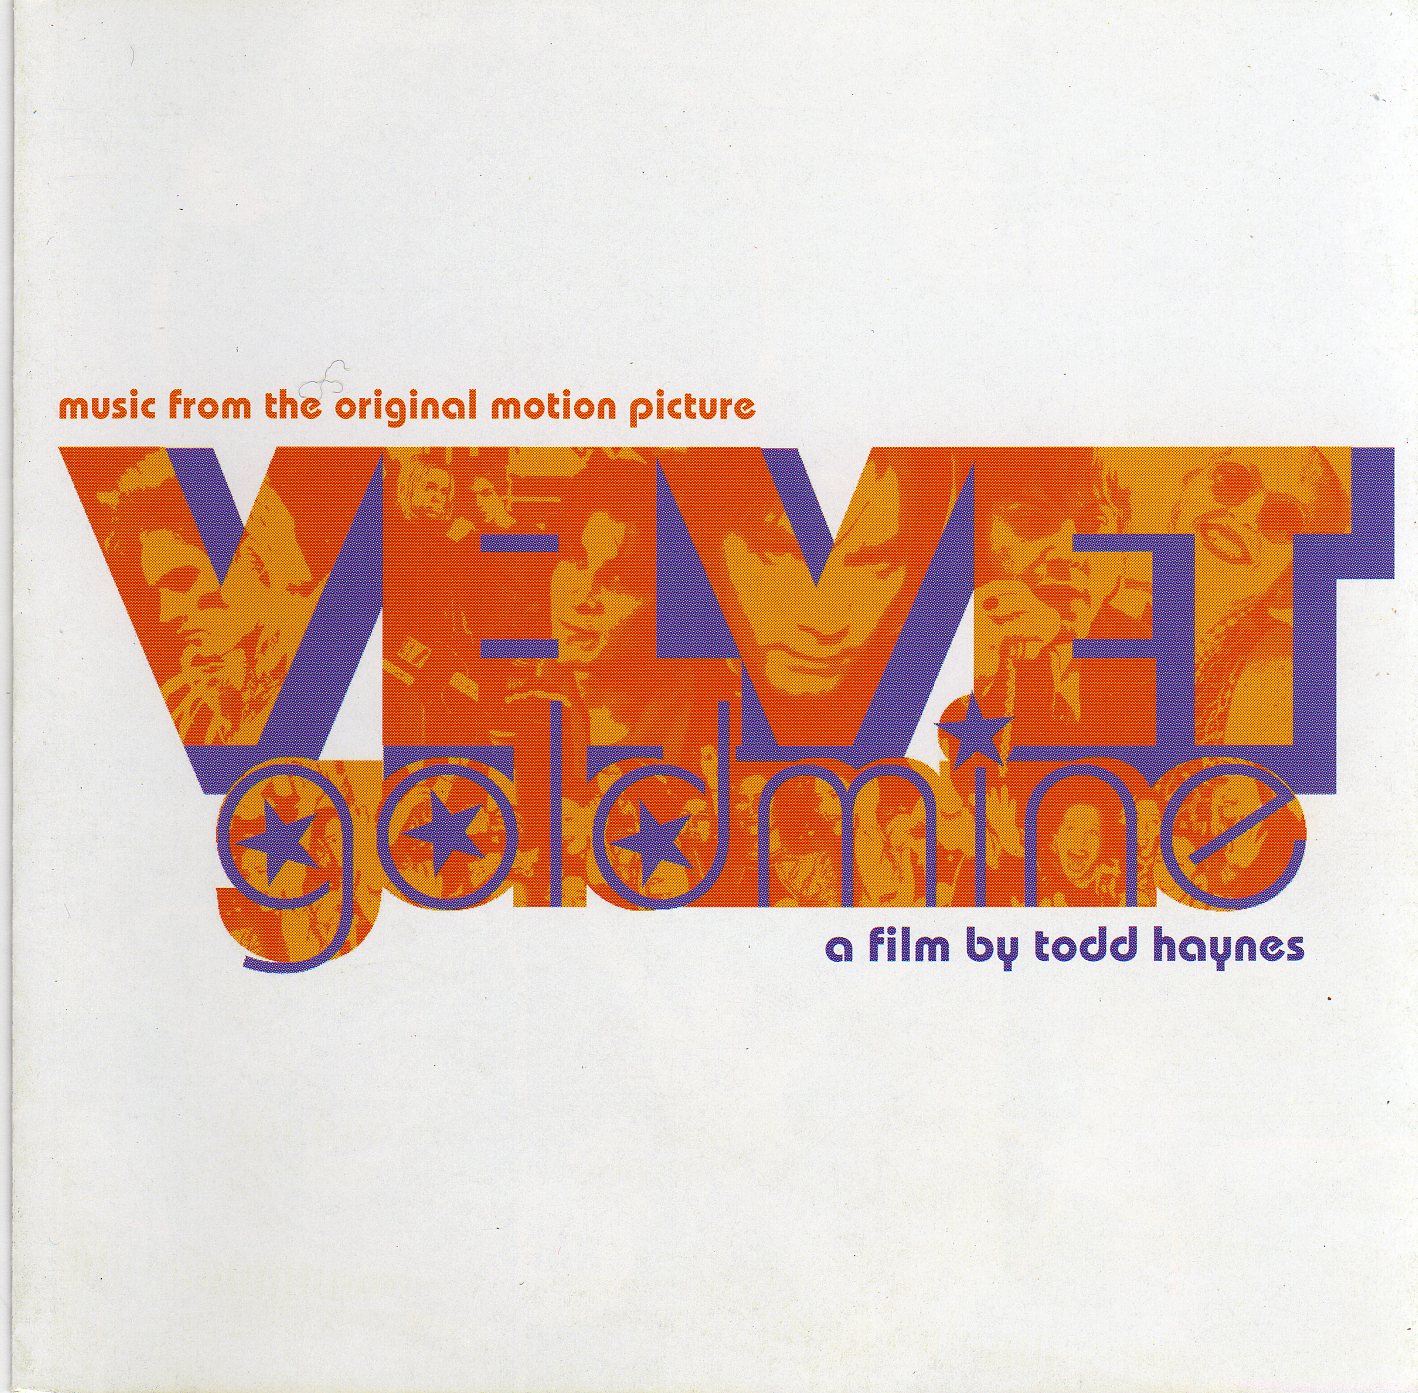 [Velvet+Goldmine+-+Front.jpg]